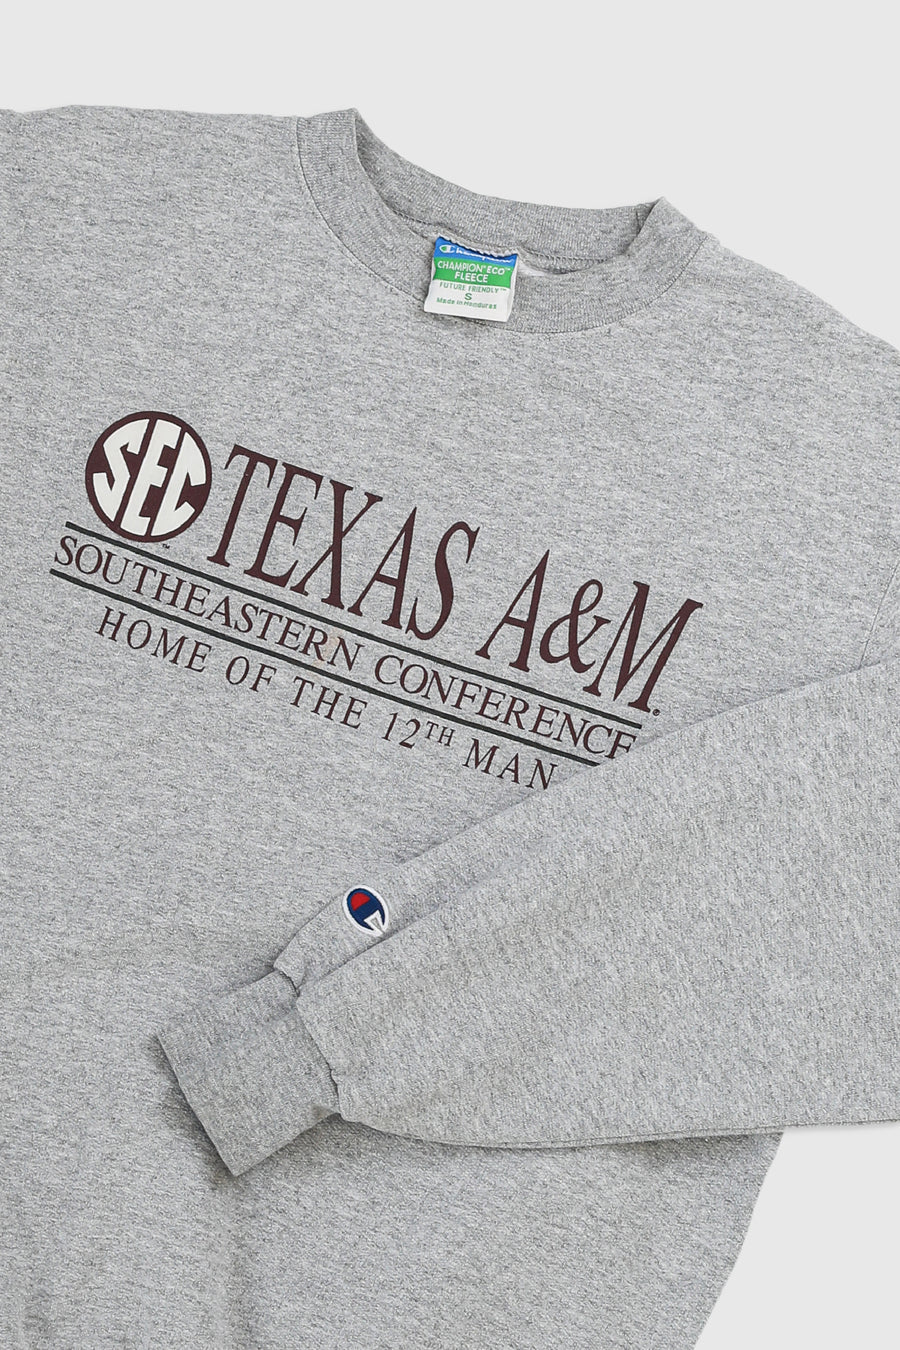 Vintage Texas Sweatshirt